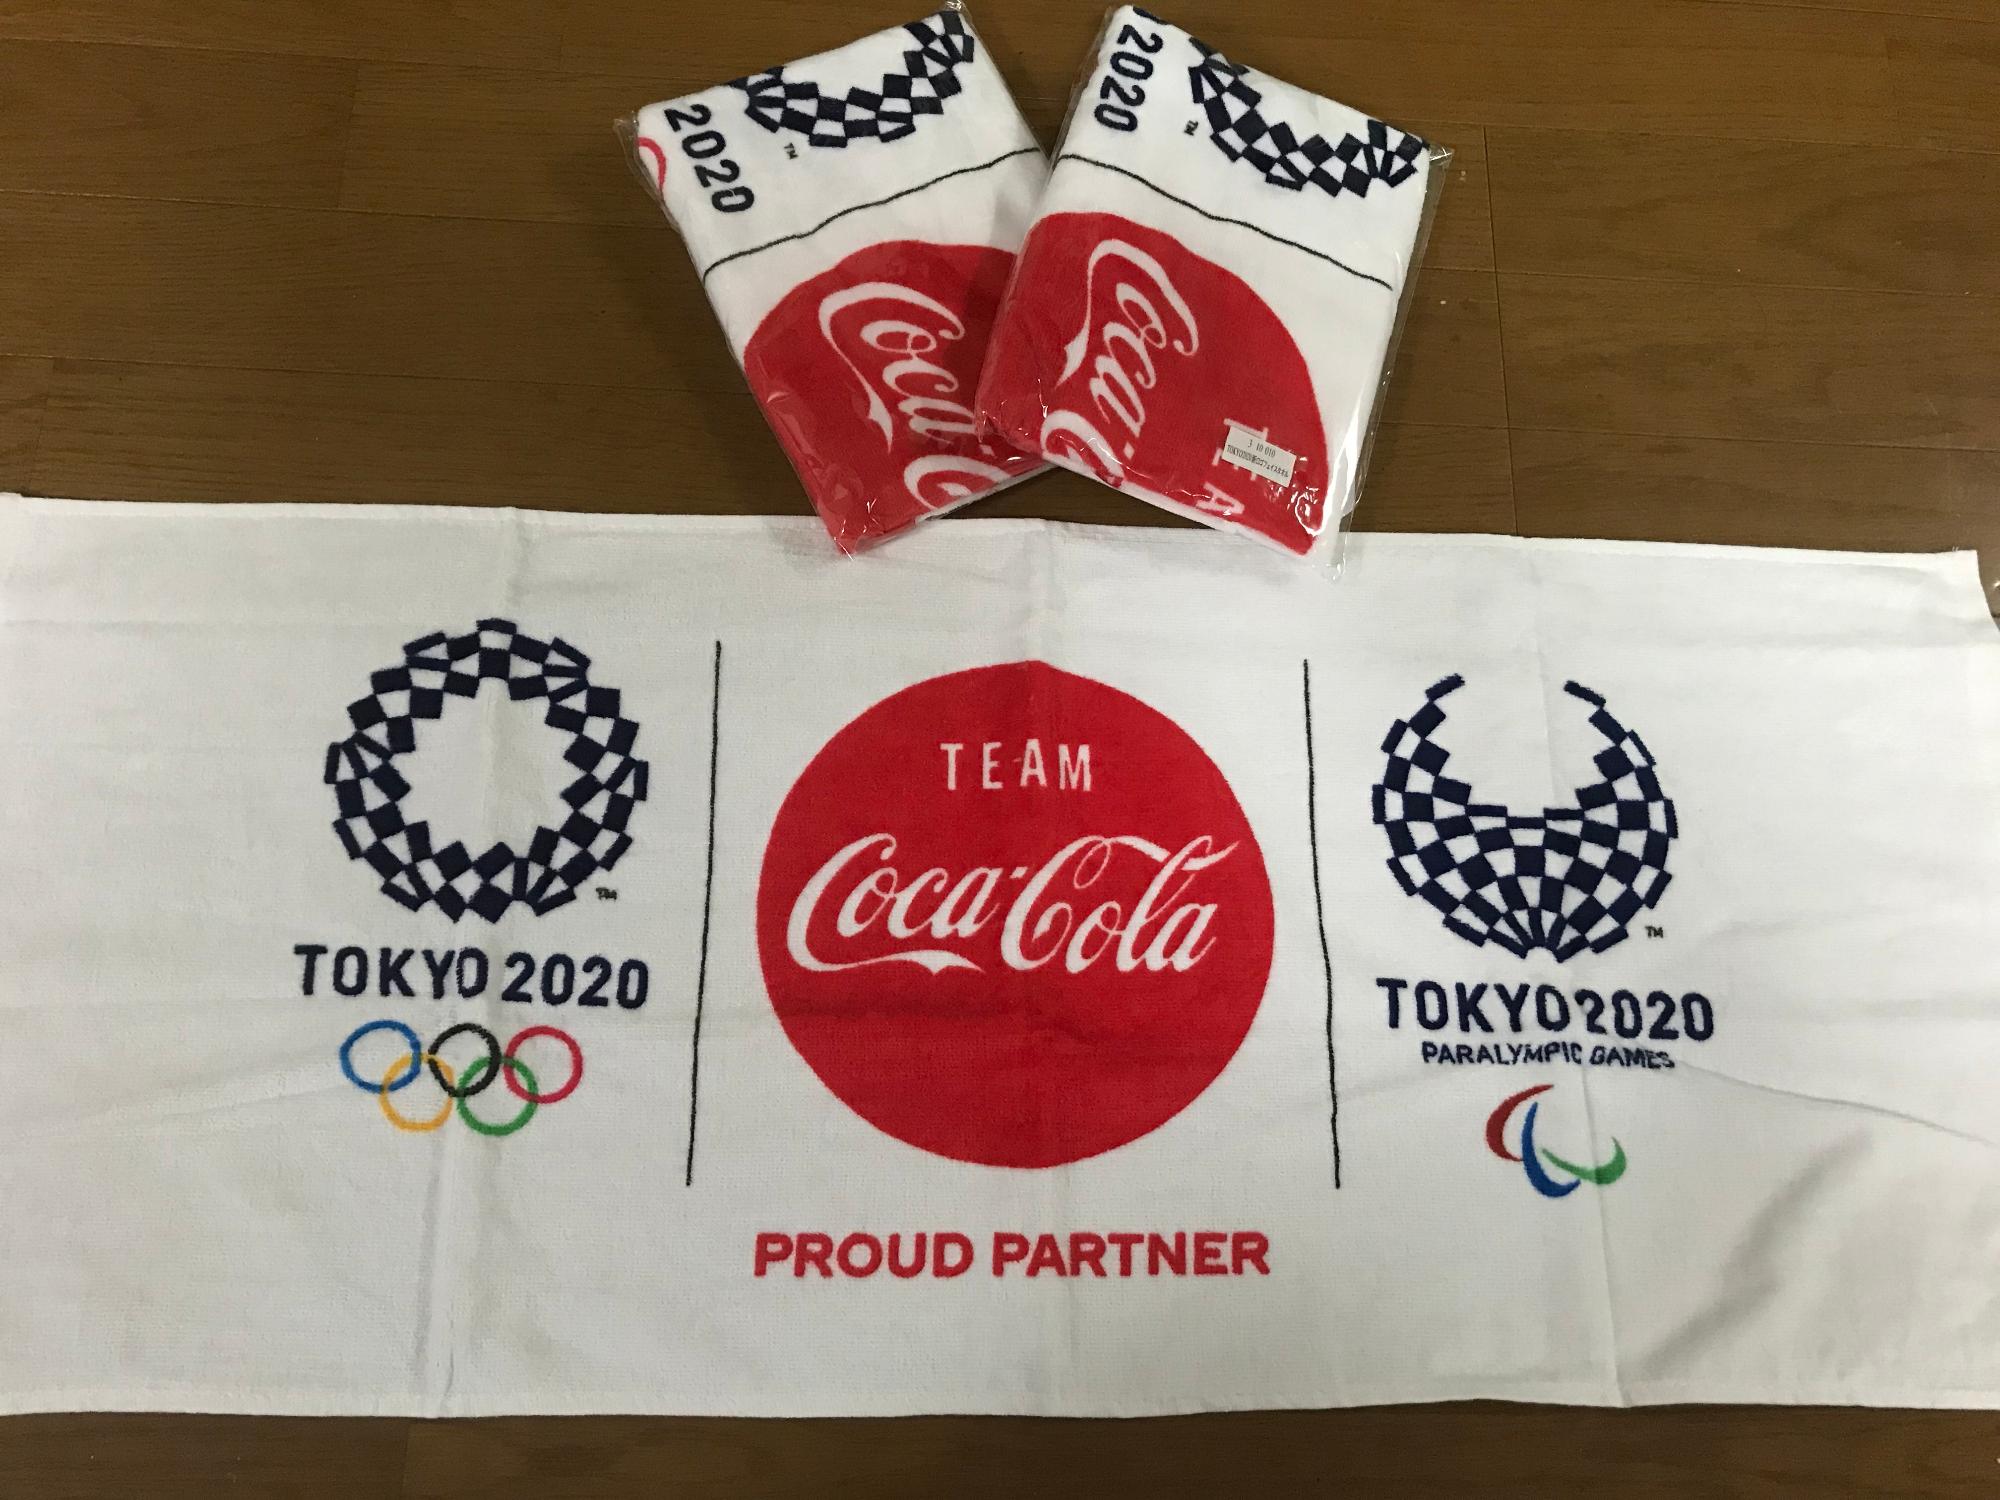 東京2020エンブレムマークとコカ・コーラのロゴが入った幅広のタオル